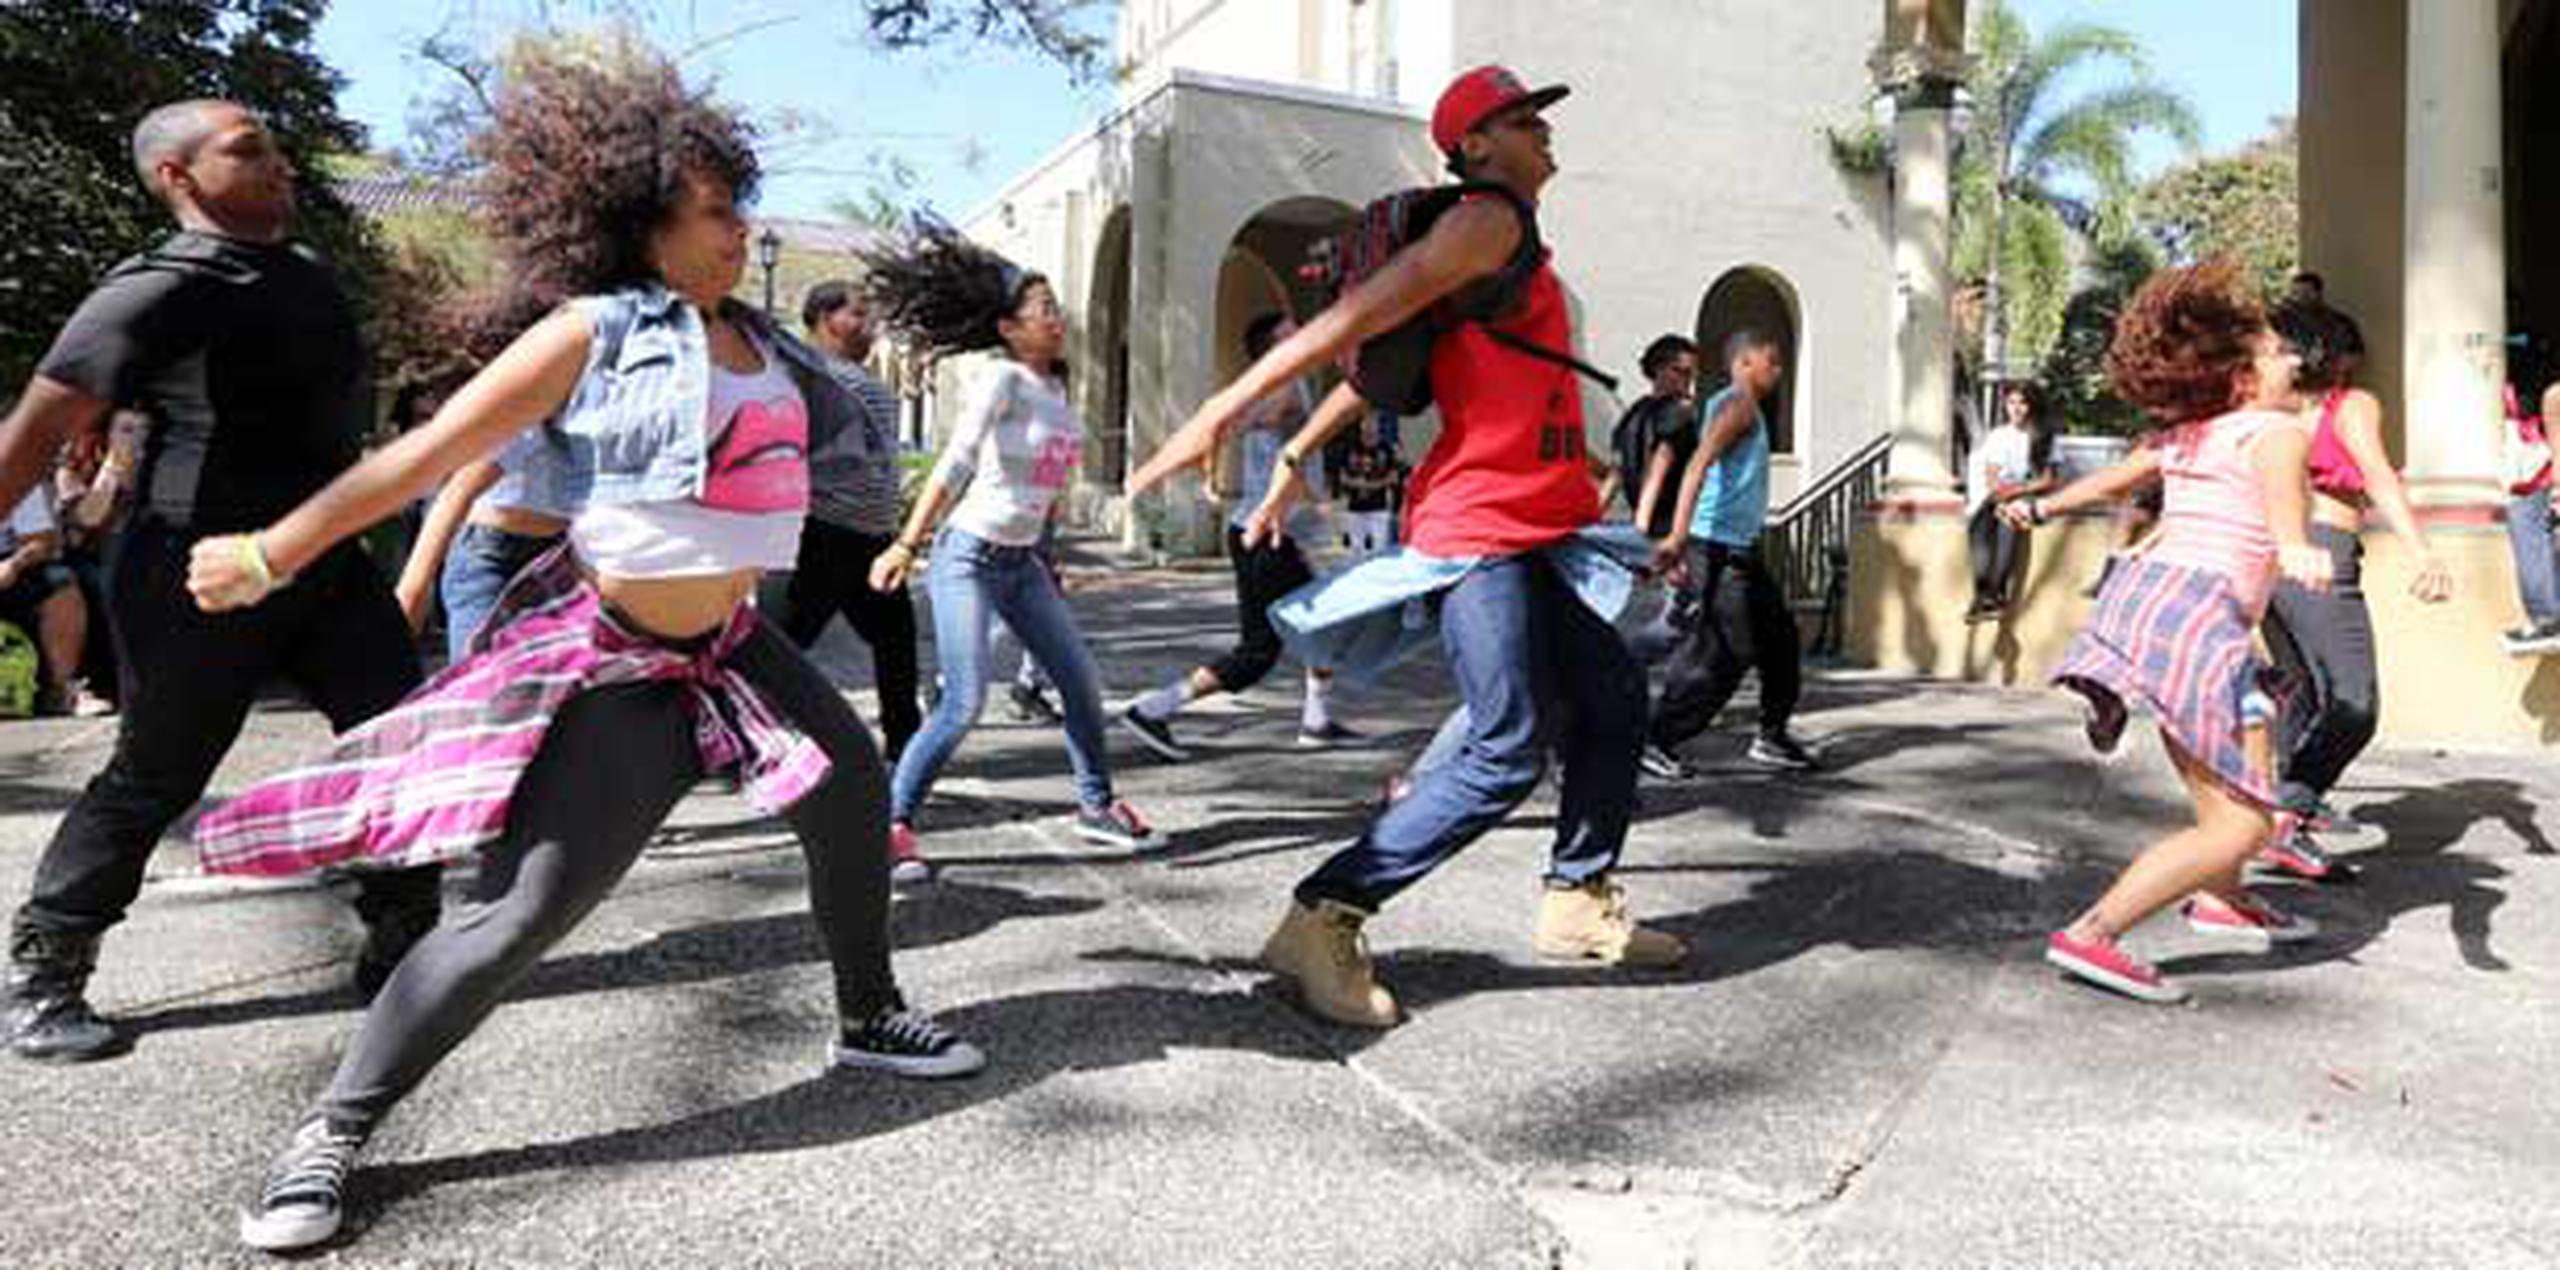 os bailarines, que son miembros de la Cooperativa Juvenil Comunal para el Desarrollo de las Artes, Recreación y Empresarismo (Coopare), realizaron durante el transcurso del día unas seis manifestaciones de baile urbano, tipo “flash mob”. (juan.martinez@gfrmedia.com)